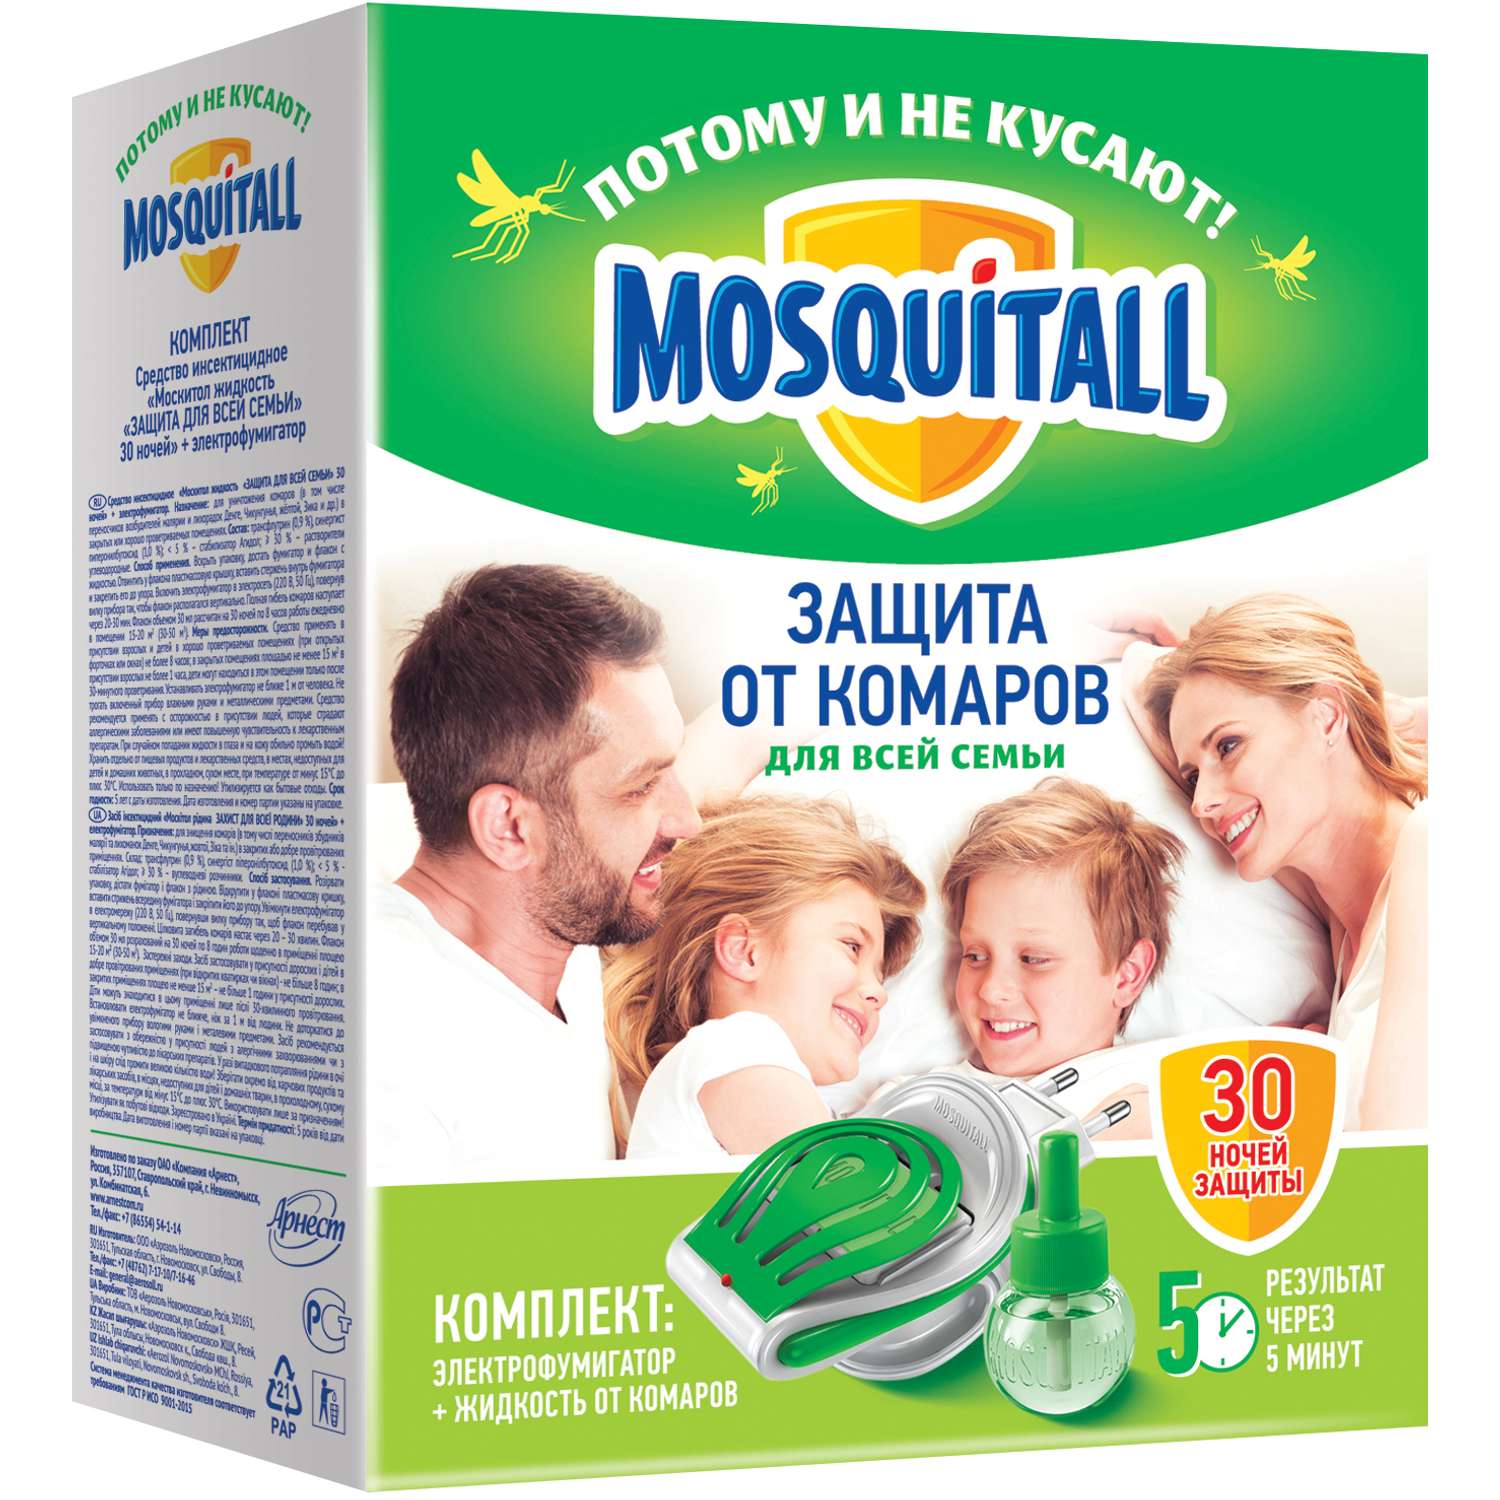 Mosquitall Комплект MOSQITOL защита для всей семьи электрофумигатор+жидкость 30 ночей от комаров - фото 1